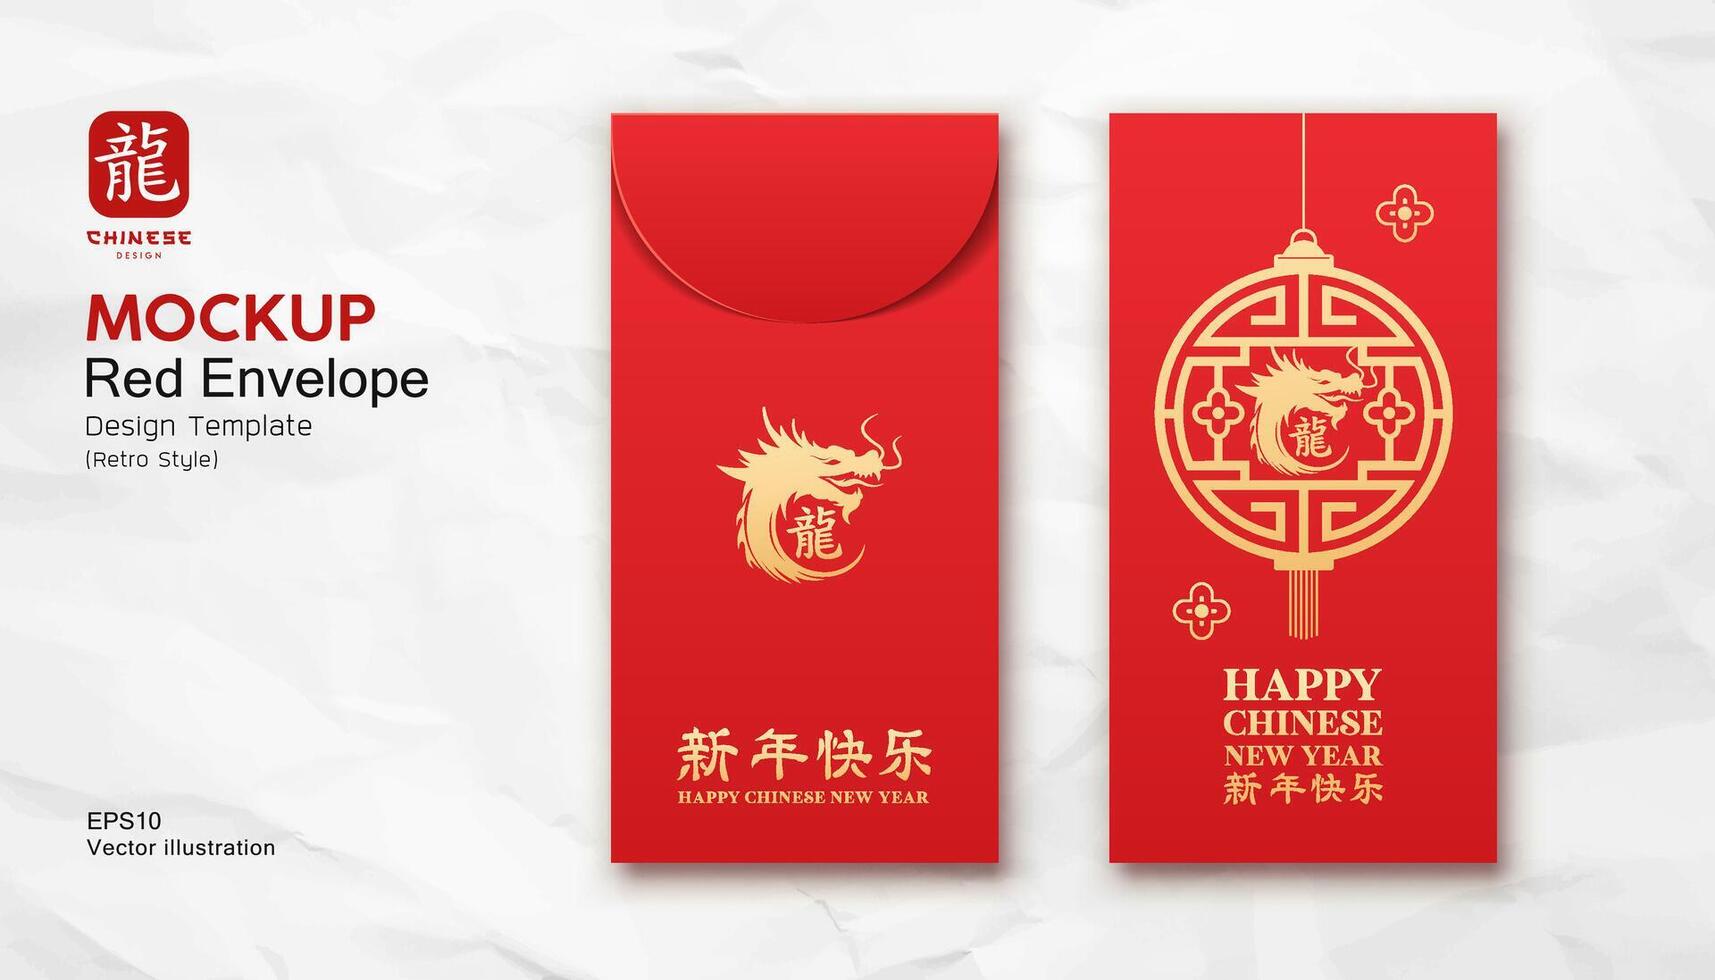 rot Briefumschlag spotten hoch, Chinesisch Neu Jahr Drachen Gold Farbe und Ornamente retro Stil Design, Zeichen Übersetzung Drachen und glücklich Neu Jahr, eps10 Vektor Illustration.